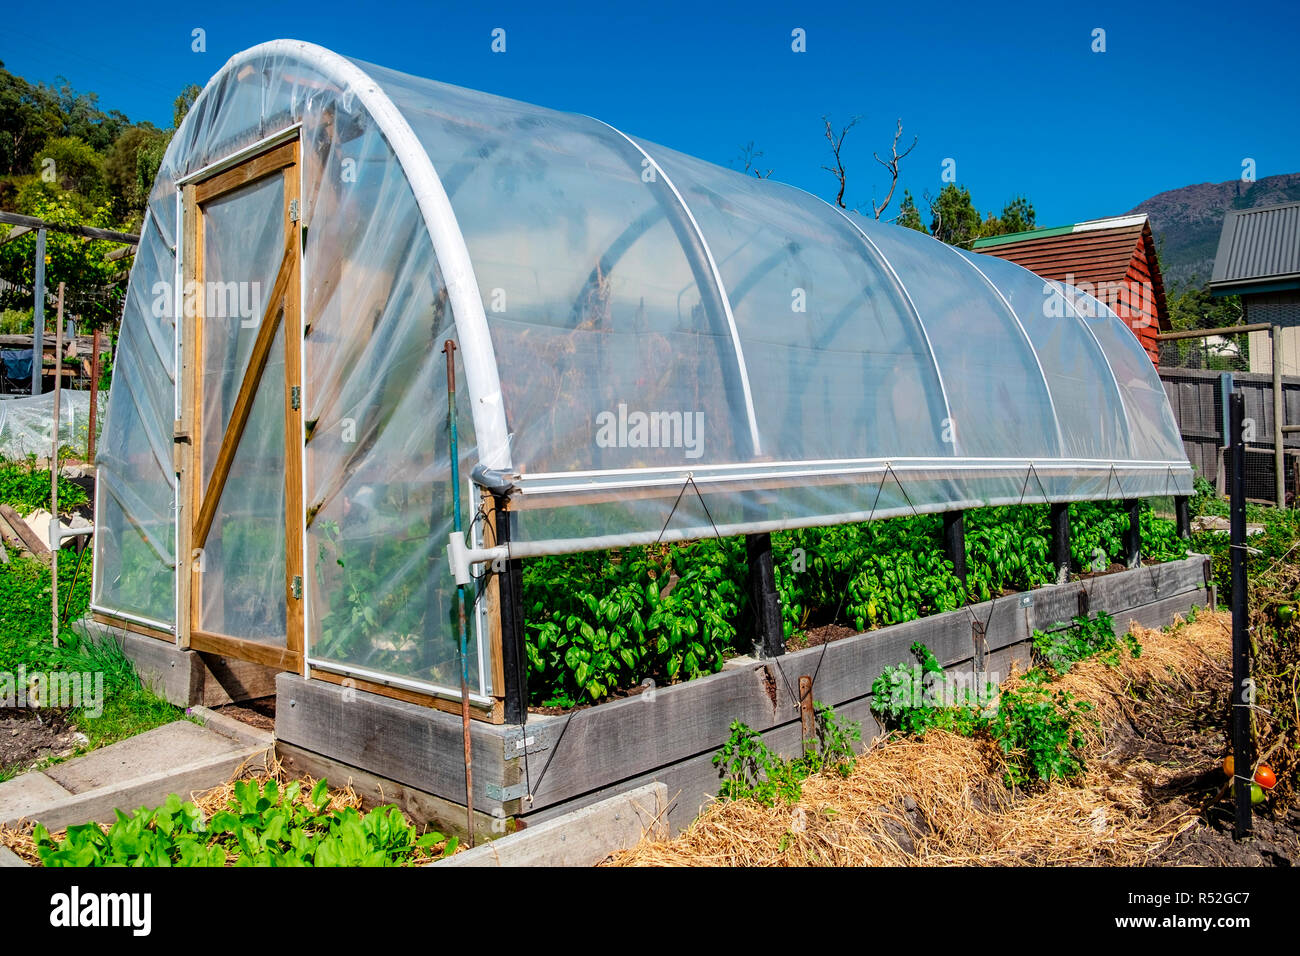 Une exploitation agricole hot house hoop à rouler volets latéraux pour permettre la circulation de l'air pour la ventilation. Banque D'Images